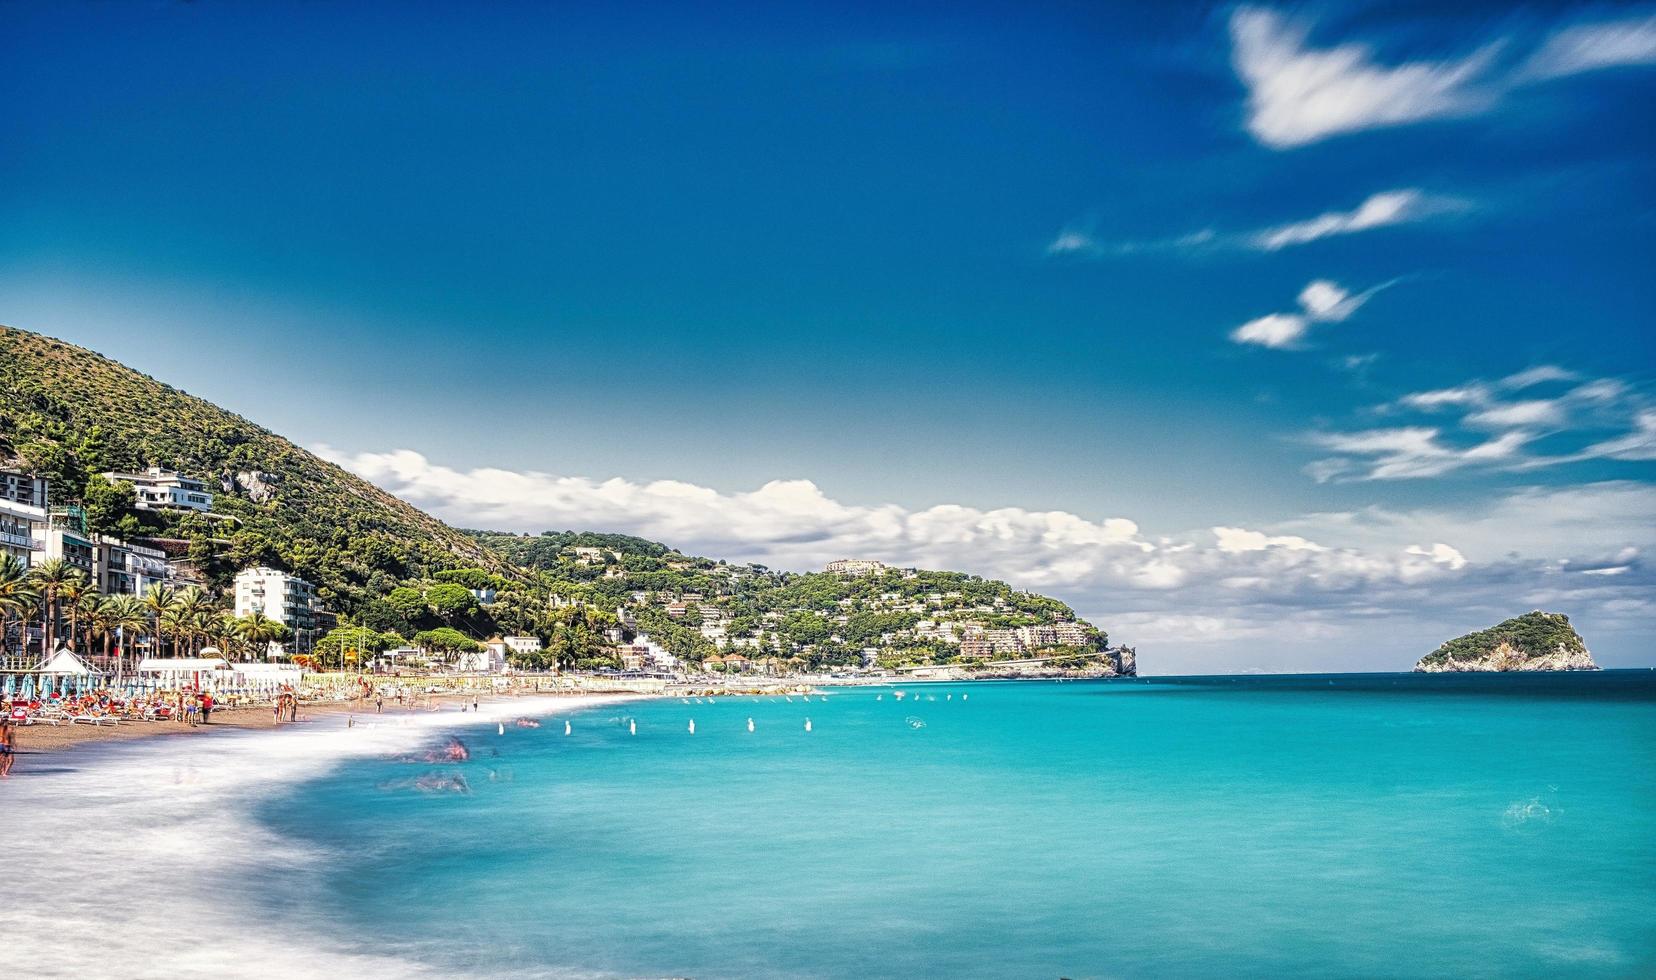 bukten Spotorno med sina stränder med fin sand och det kristallklara havet i augusti, i västra Ligurien foto